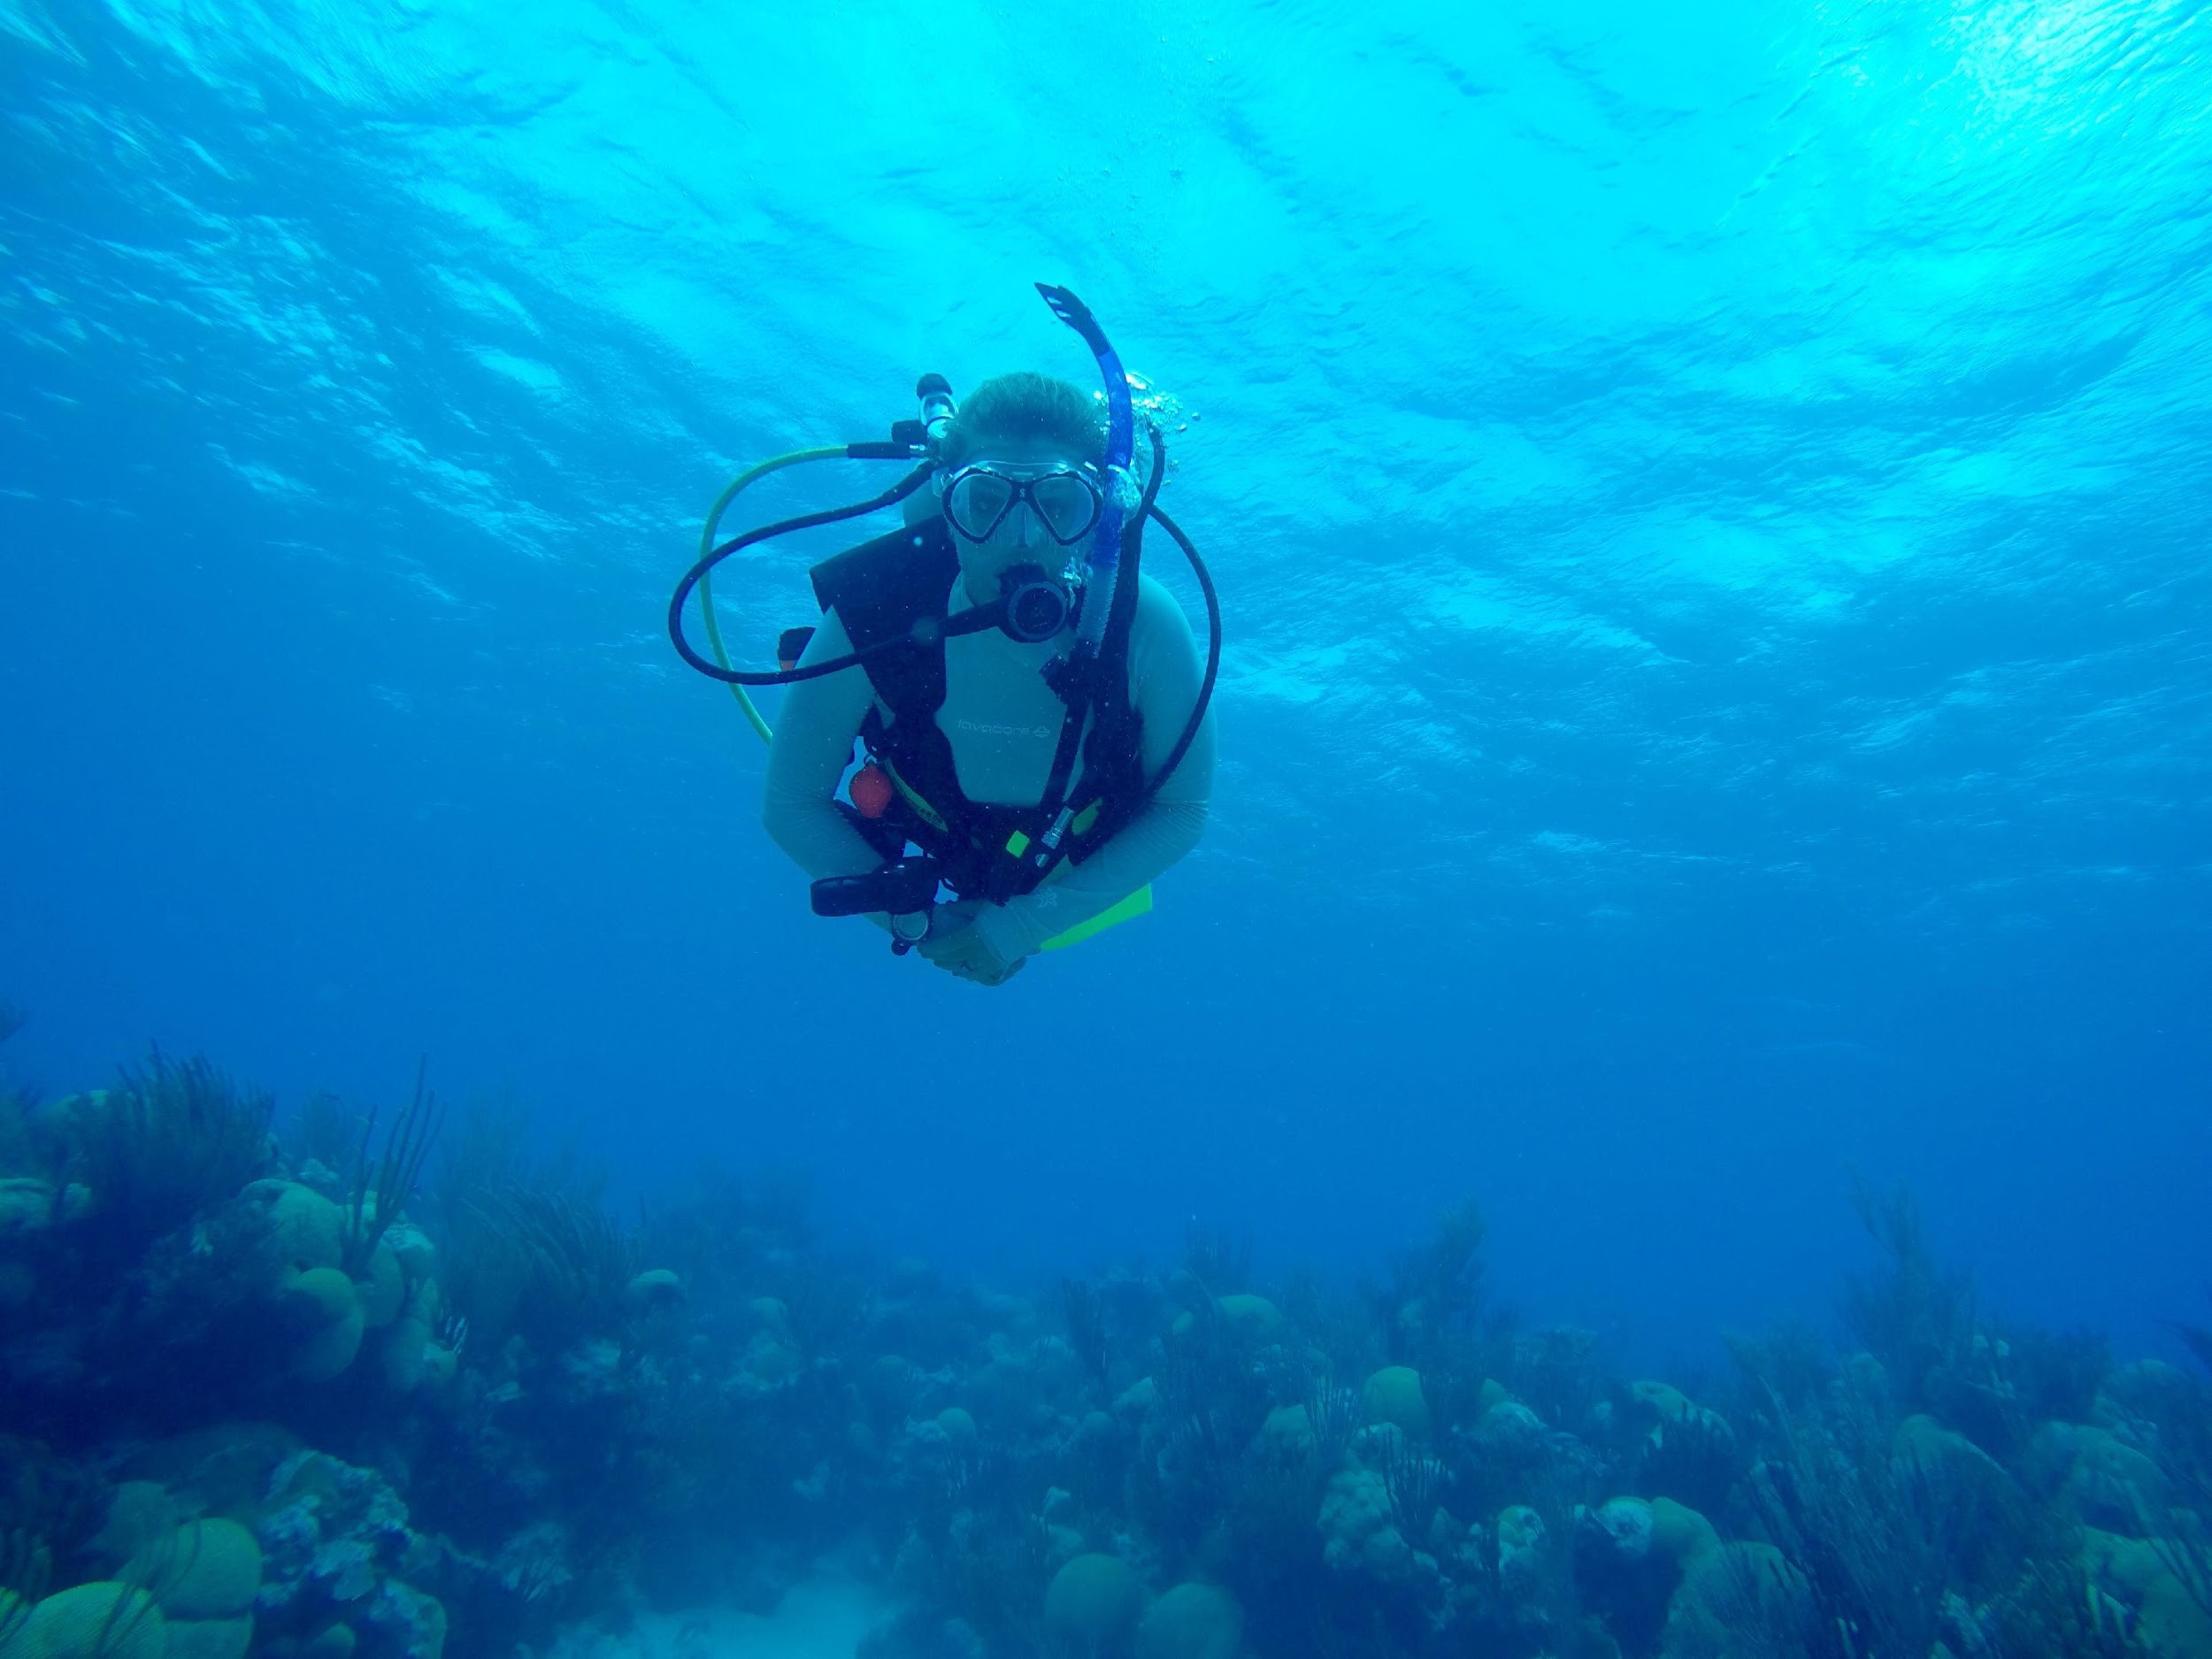 Danielle Becker, diving (AAUS website)